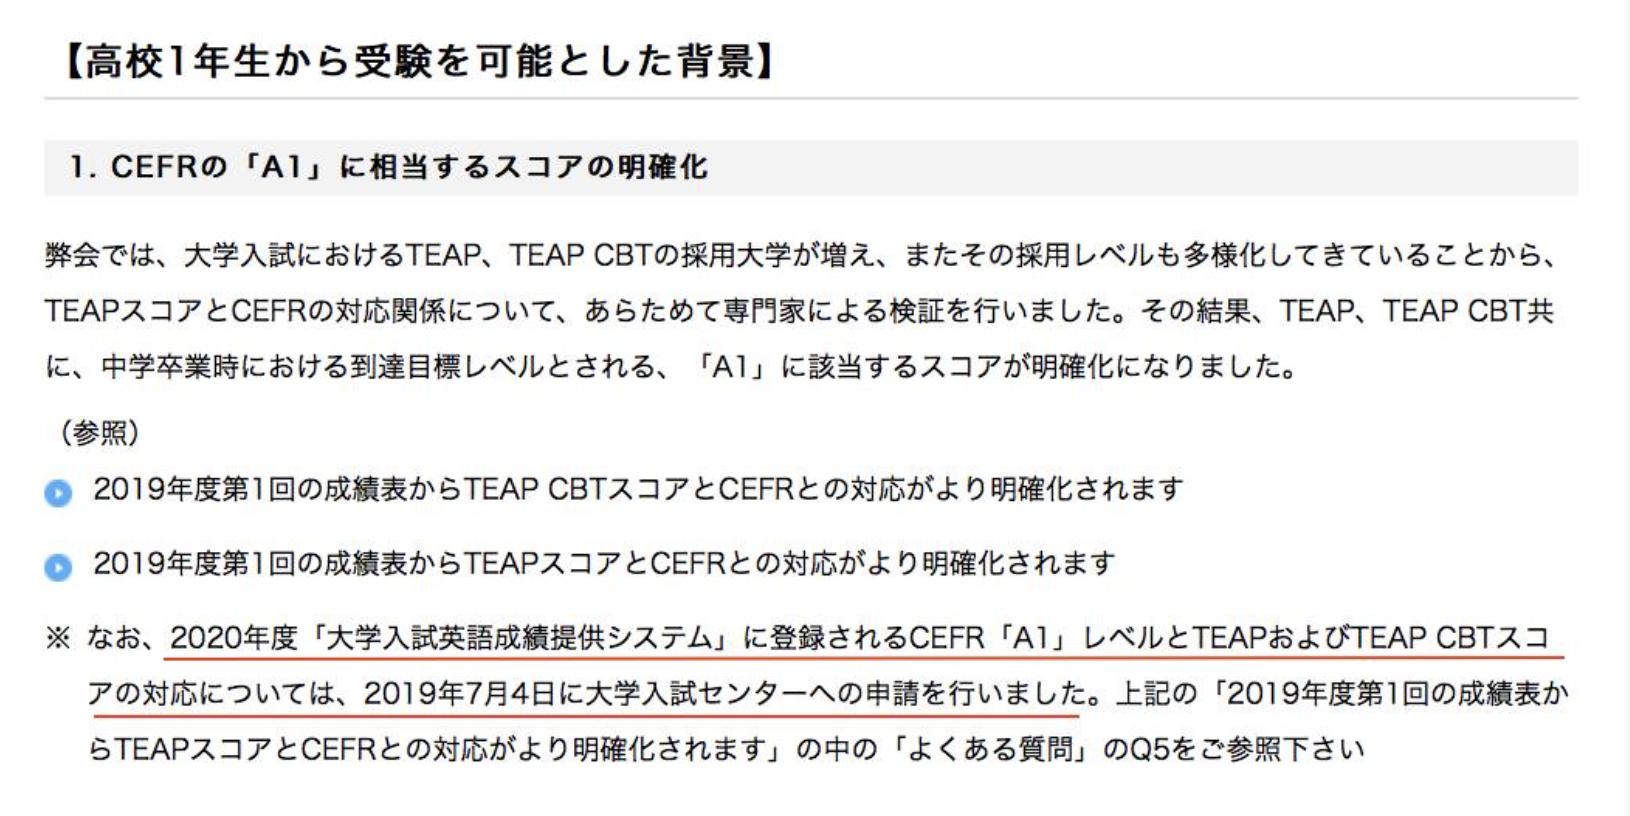 羽藤由美 A Twitter 英検協会はteapとteap Cbtについて Cefrとの対応づけの変更 測定領域の拡大 を19年7月4日に大学入試センターに申請している